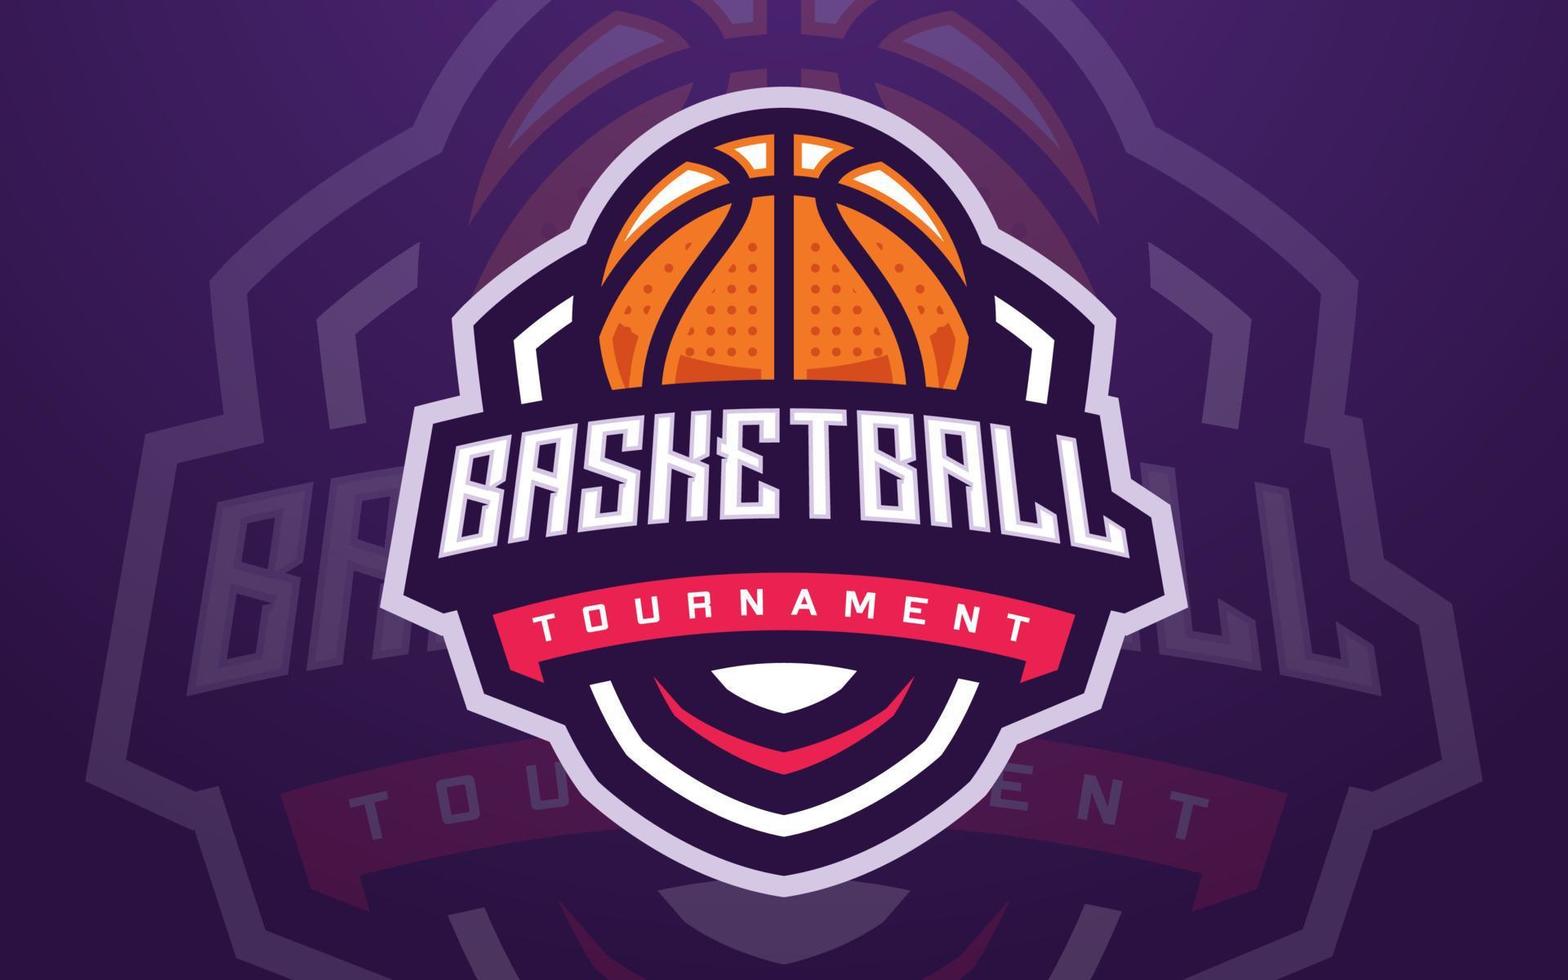 Basketballclub-Logo-Vorlage für Sportmannschaft und Turnier vektor